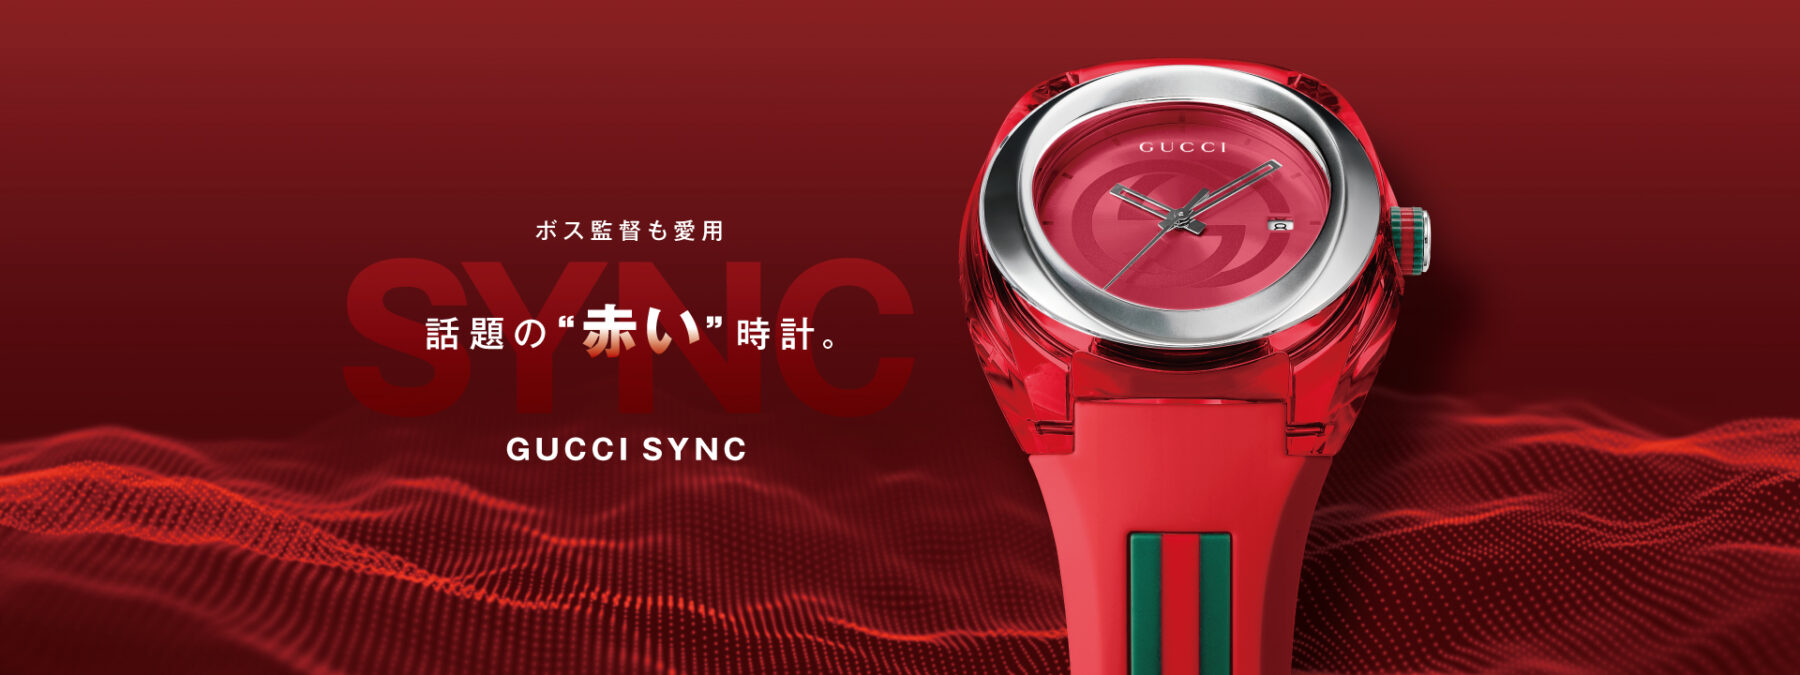 スーパーセール】 【ジャンク】Gucci 腕時計 シンク グッチ XXL Sync